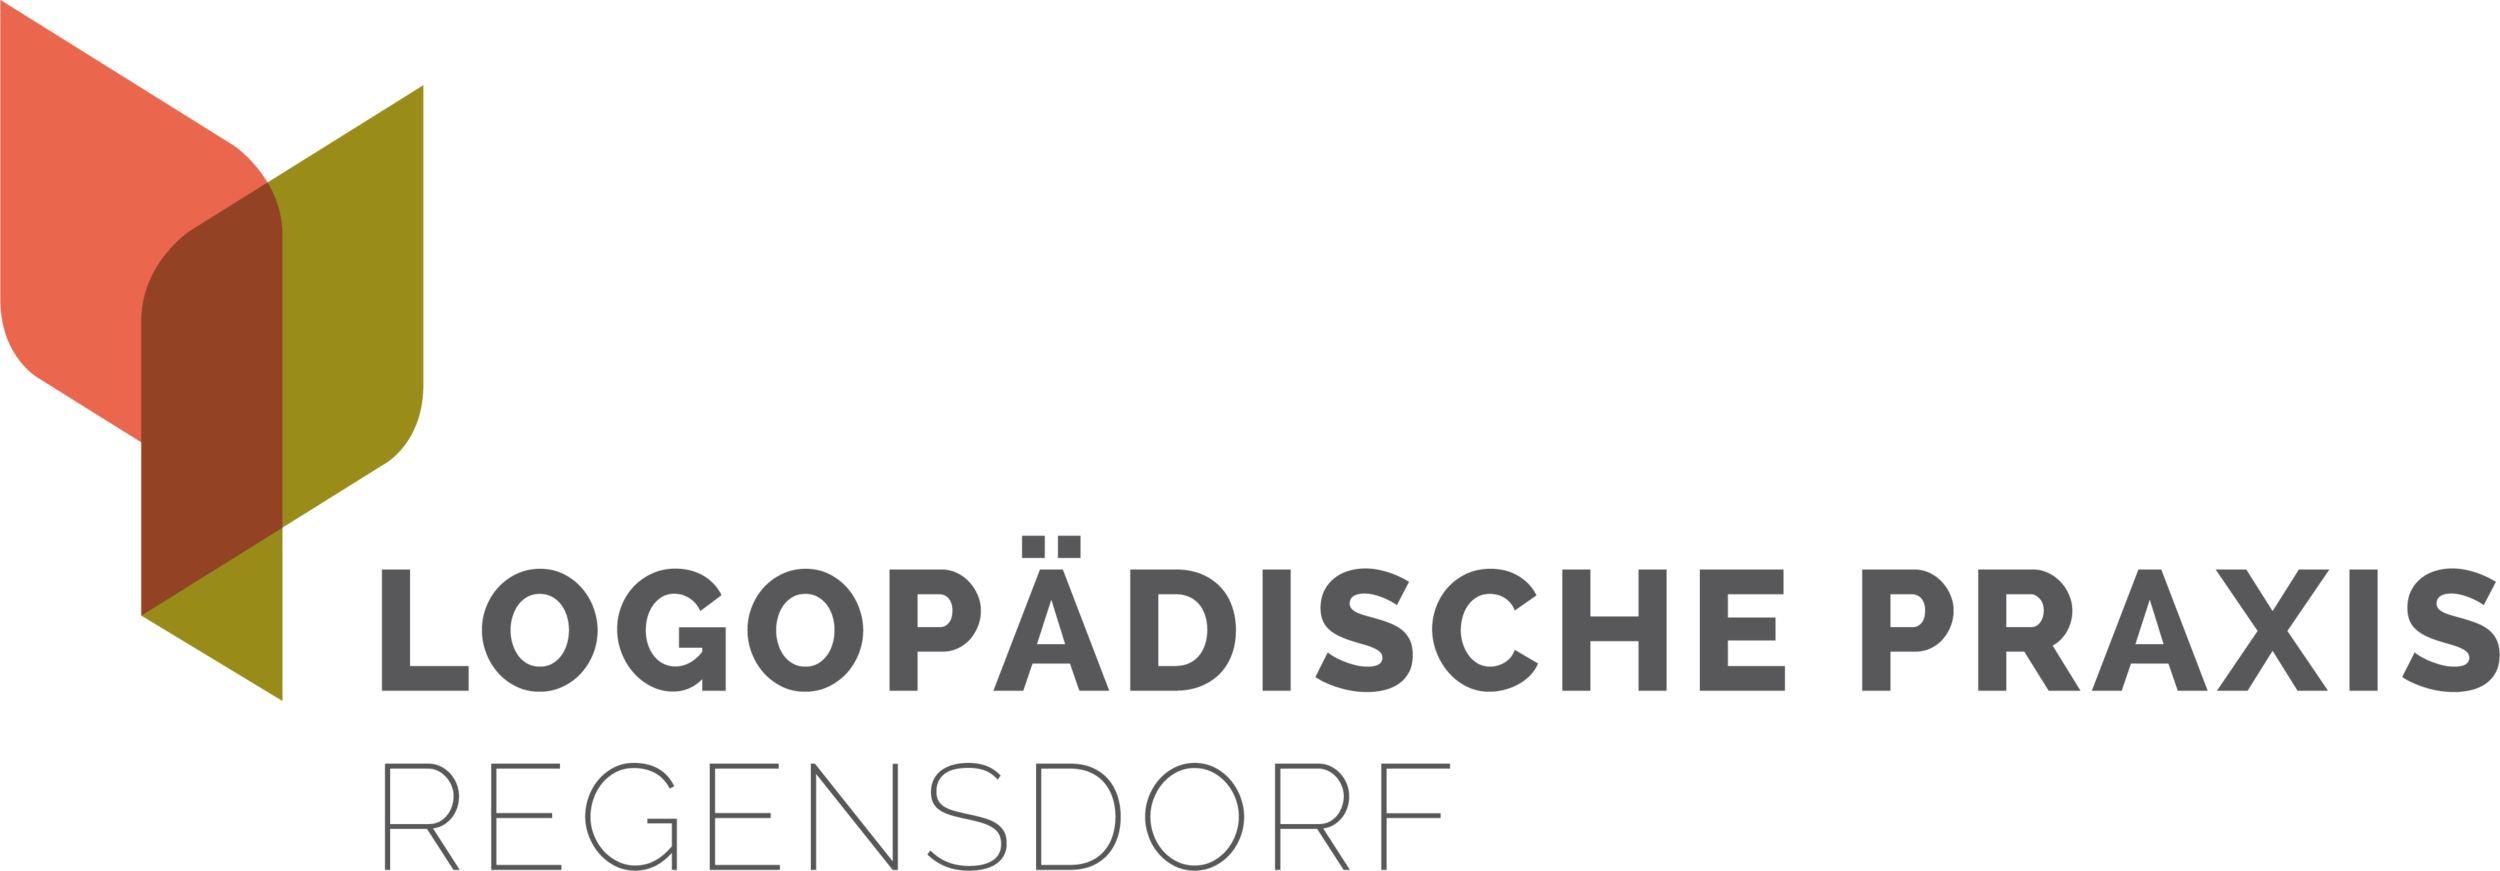 Logopädische Praxis Regensdorf